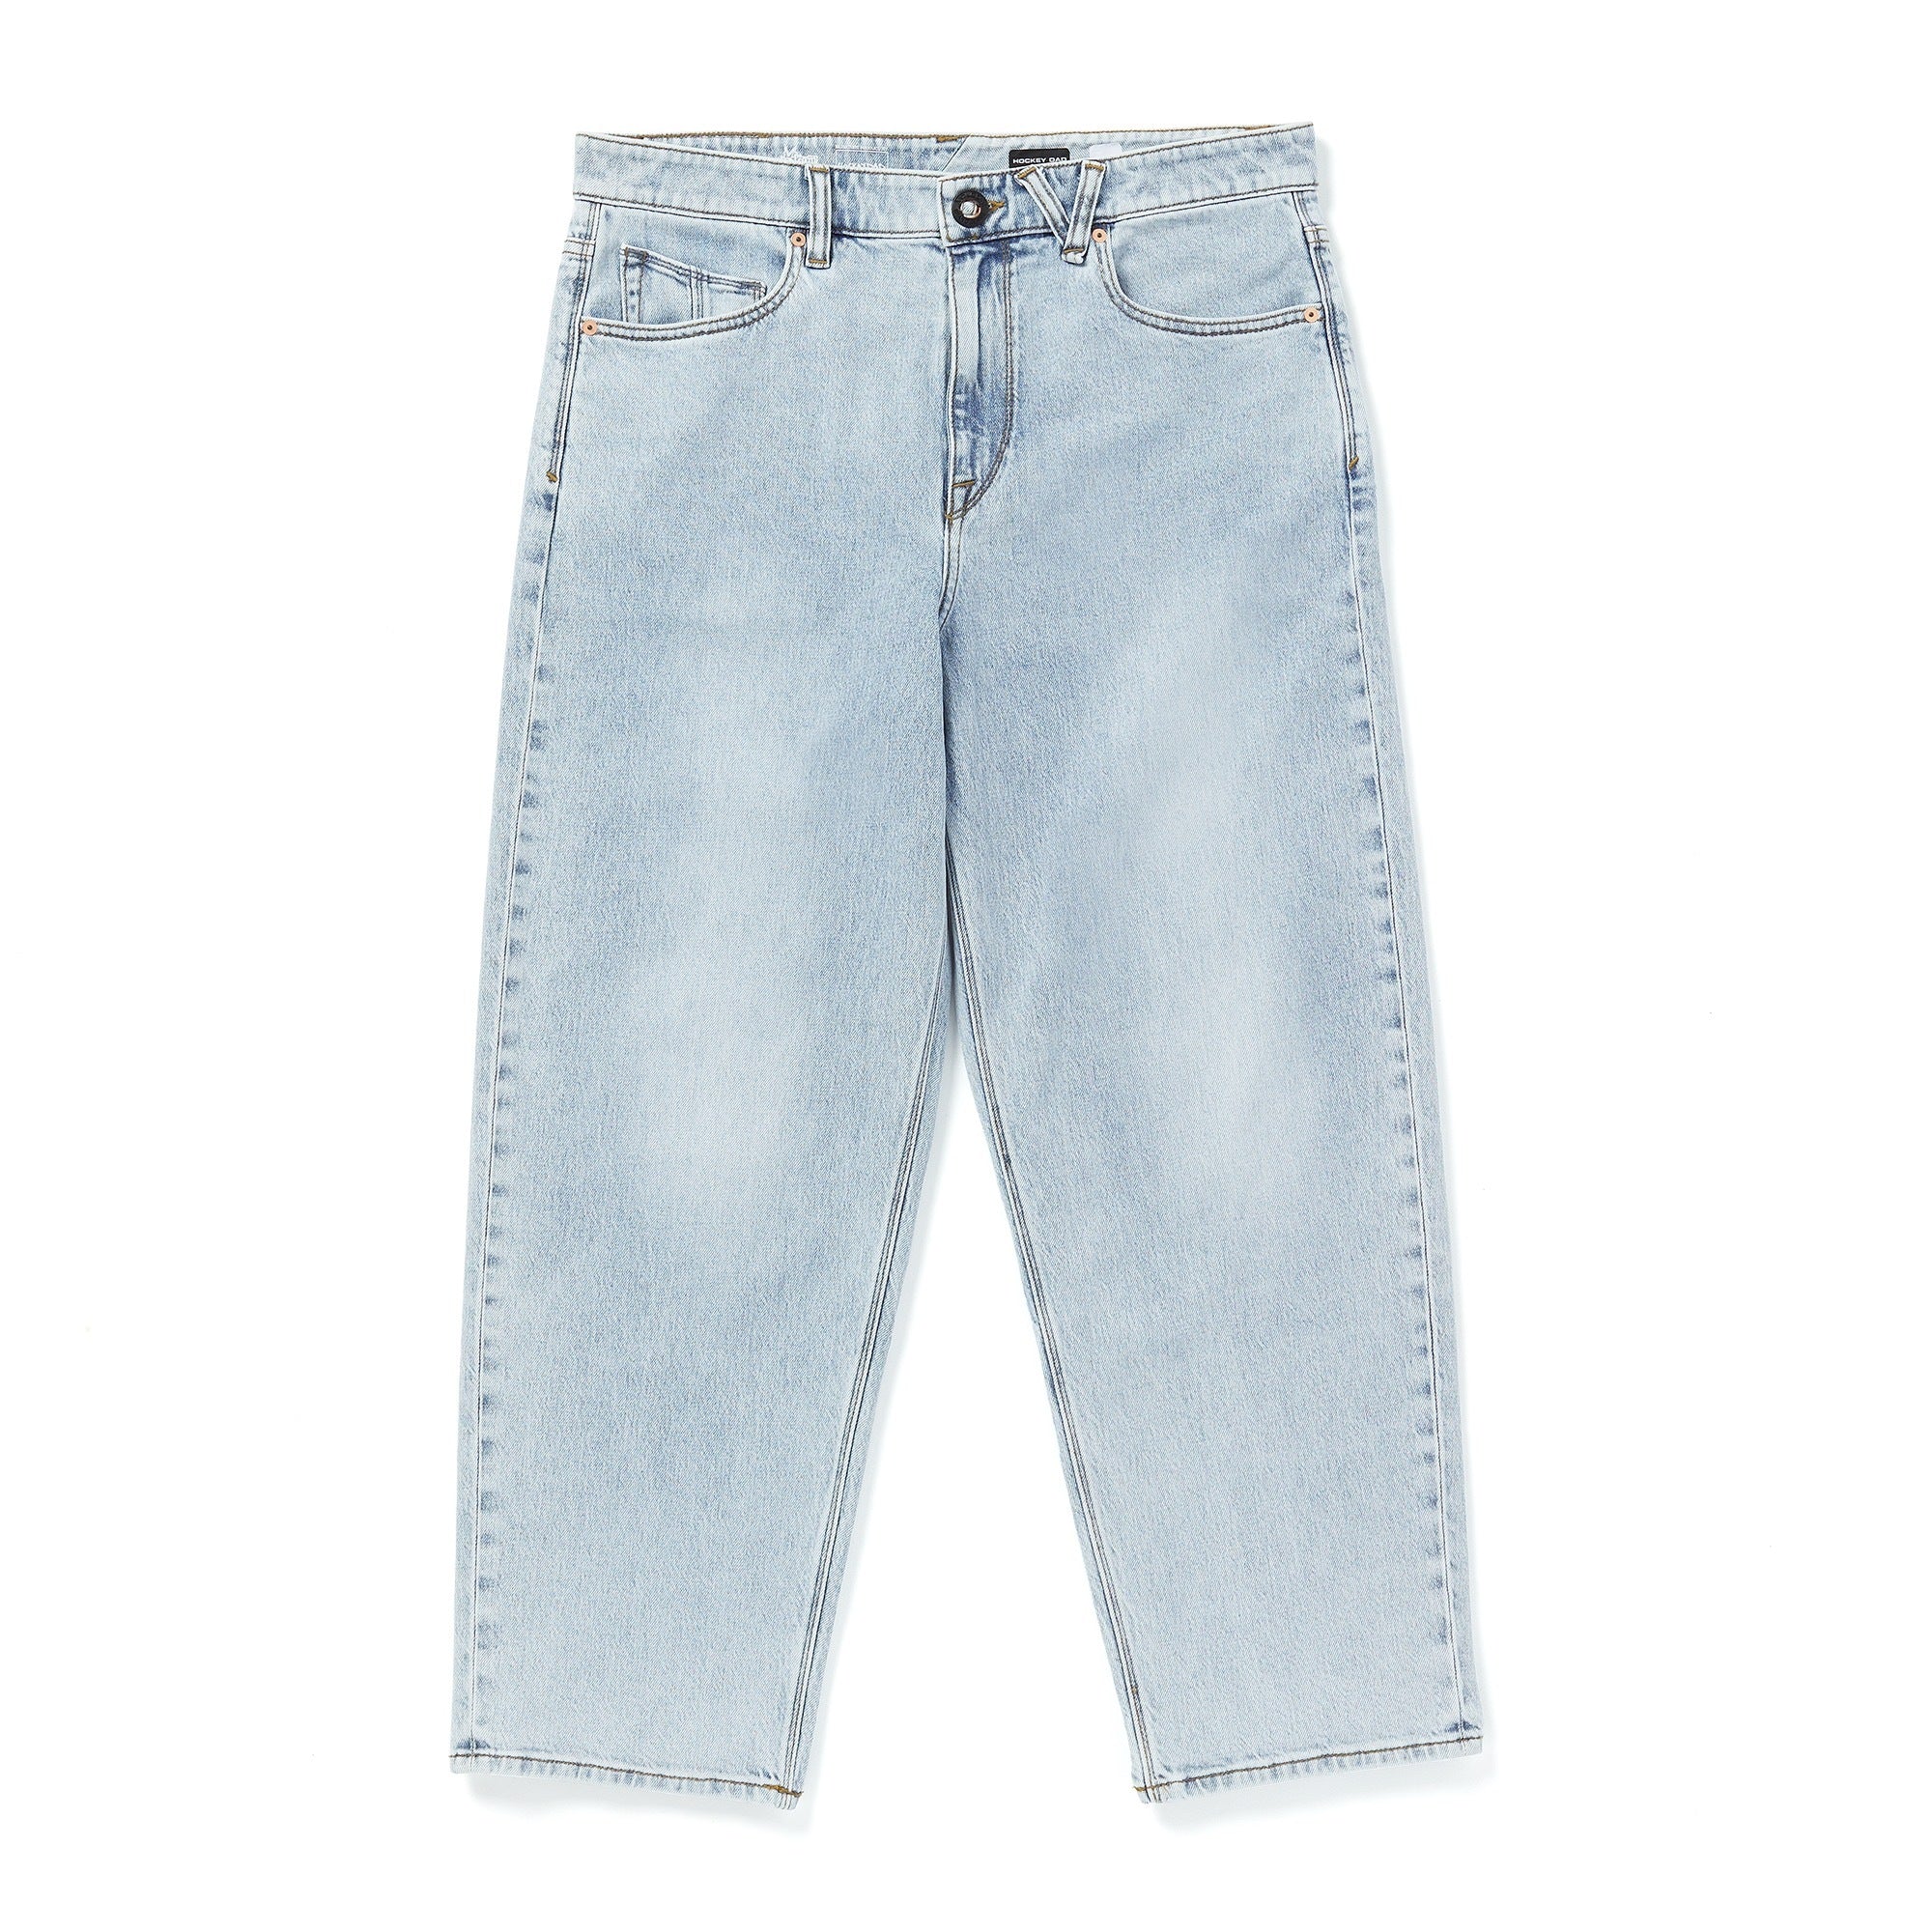 jeans-hockey-dad-homme-volcom, men denim, loose fit, dm2 shop, 02